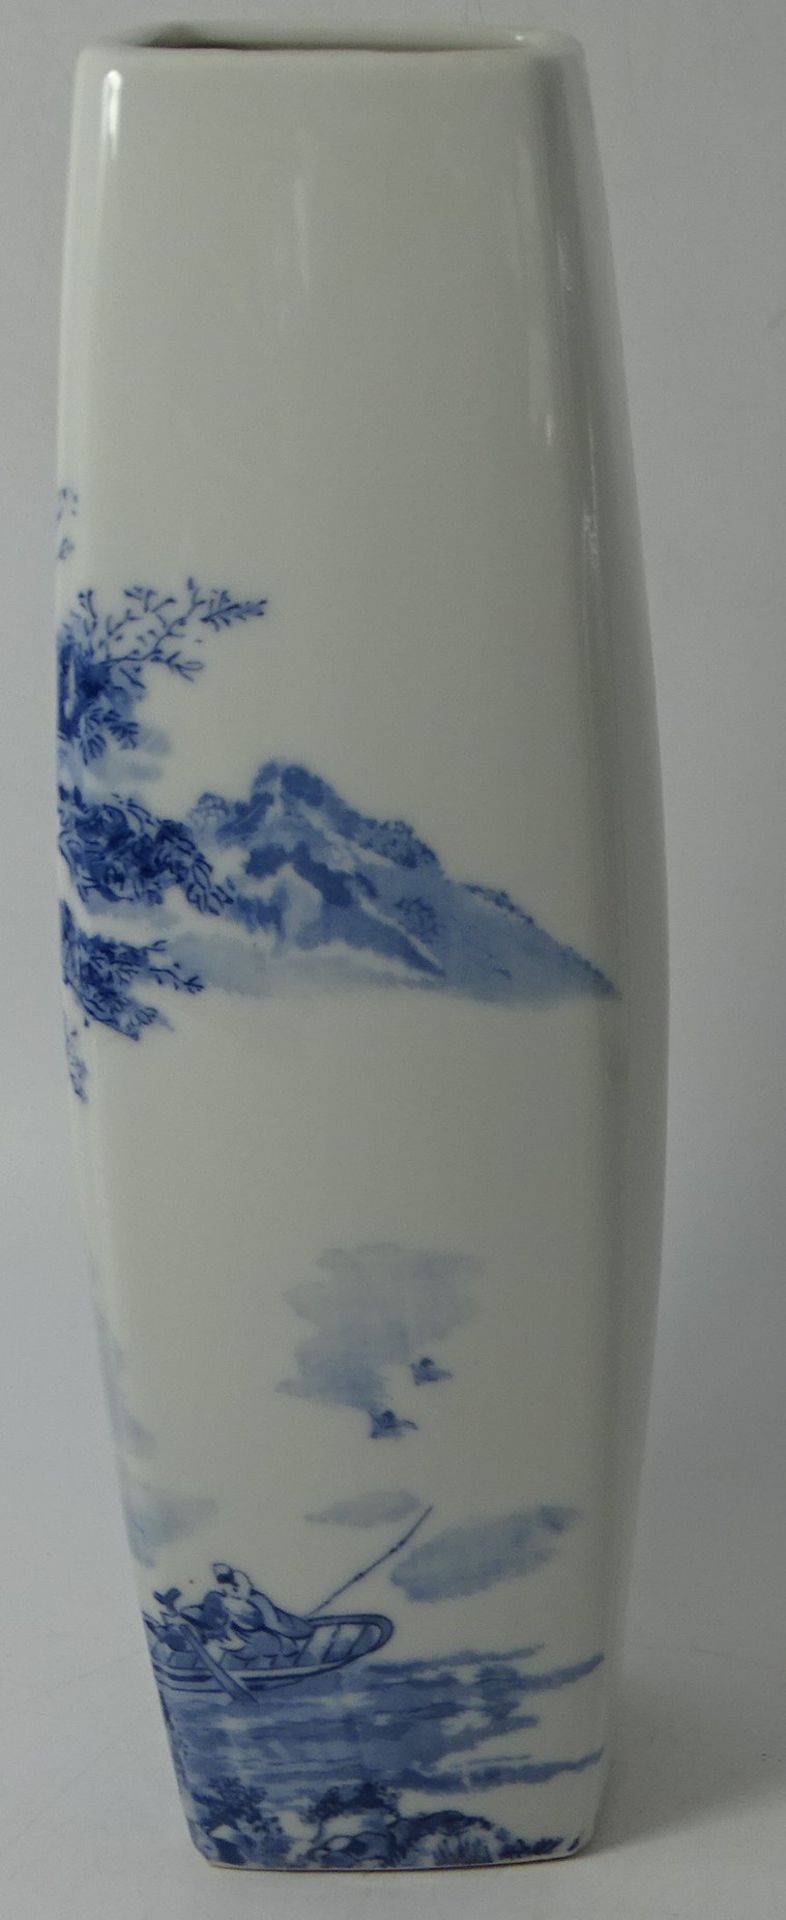 hohe schlanke China Vase mit Blaumalerei, gemarkt, H-29 cm - Bild 3 aus 6